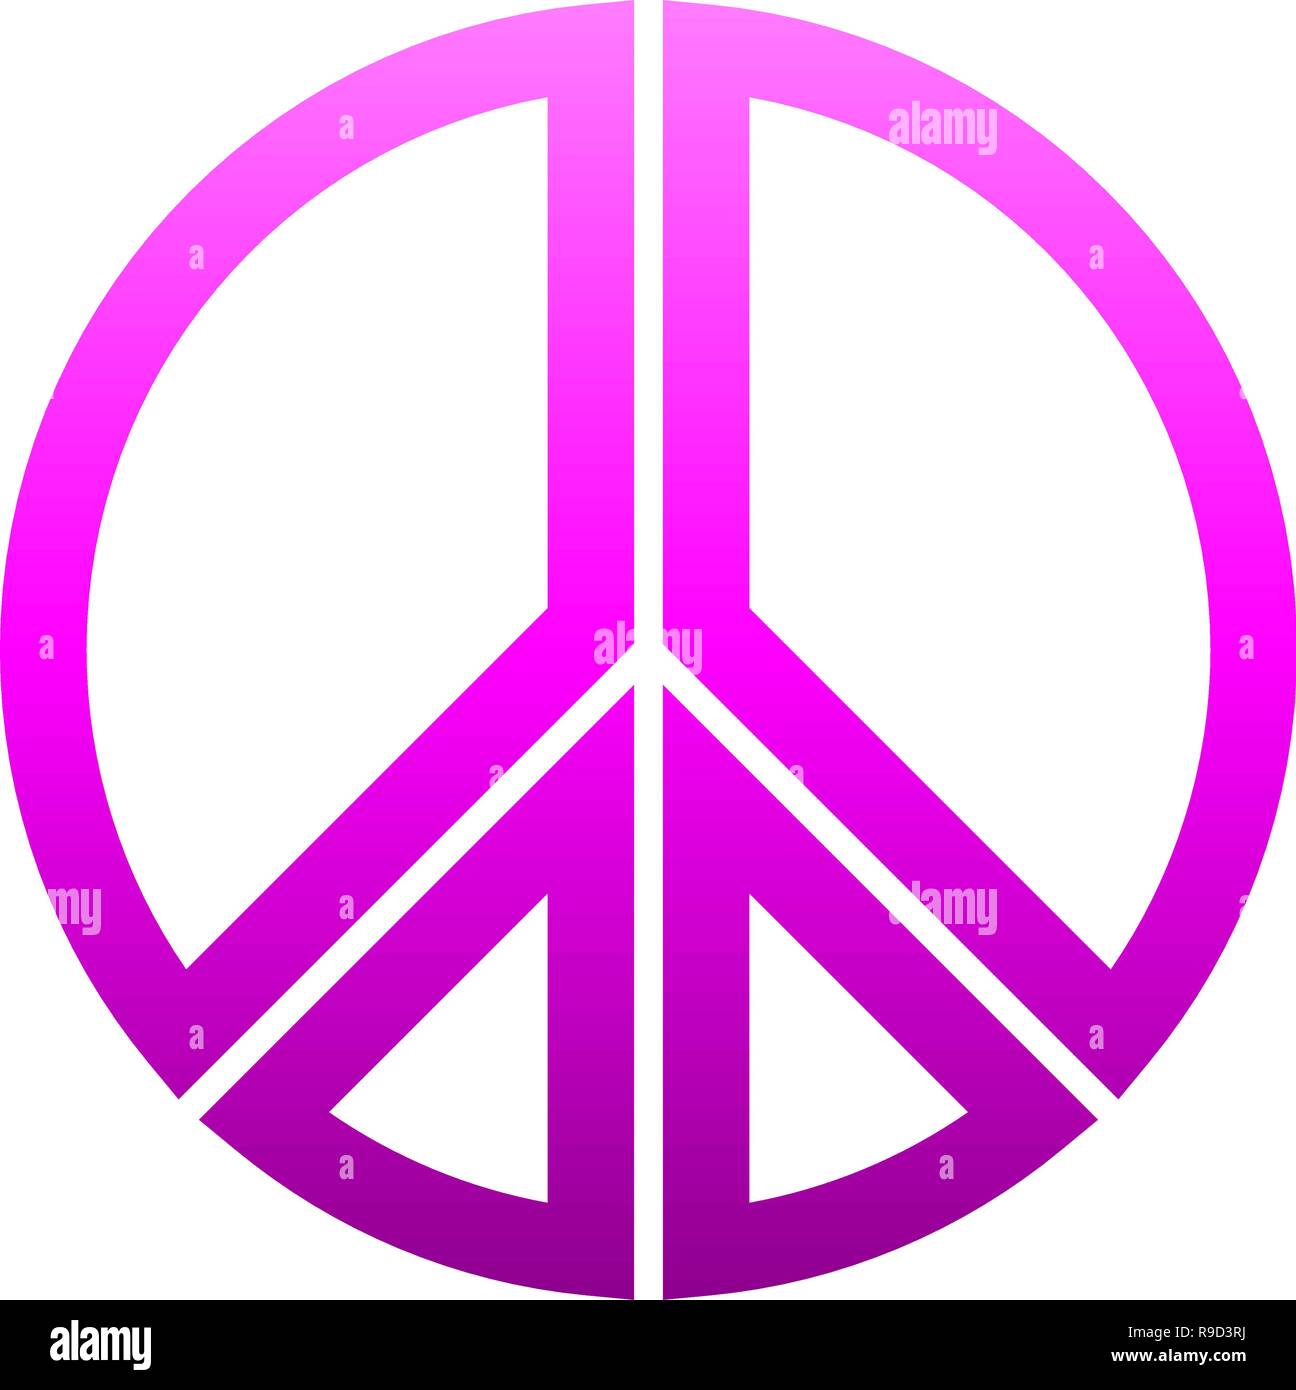 Simbolo di pace icona - viola gradiente semplice, segmentato di forme con contorni, isolato - illustrazione vettoriale Illustrazione Vettoriale